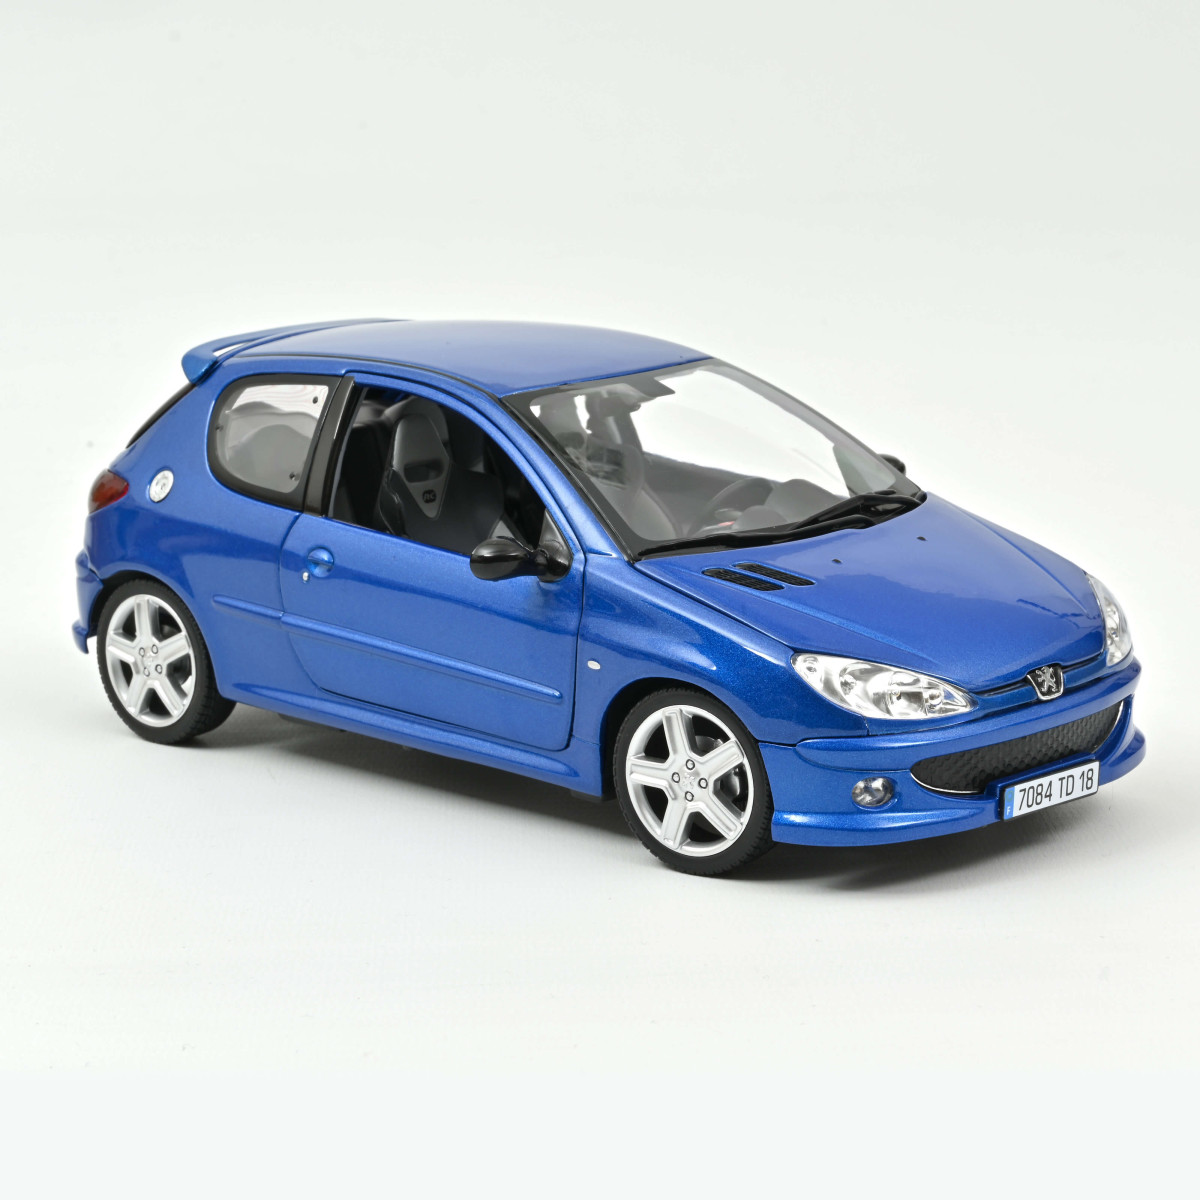 Norev 184724 Peugeot 206 RC 2003 Recif Blue 1:18 scale diecast model